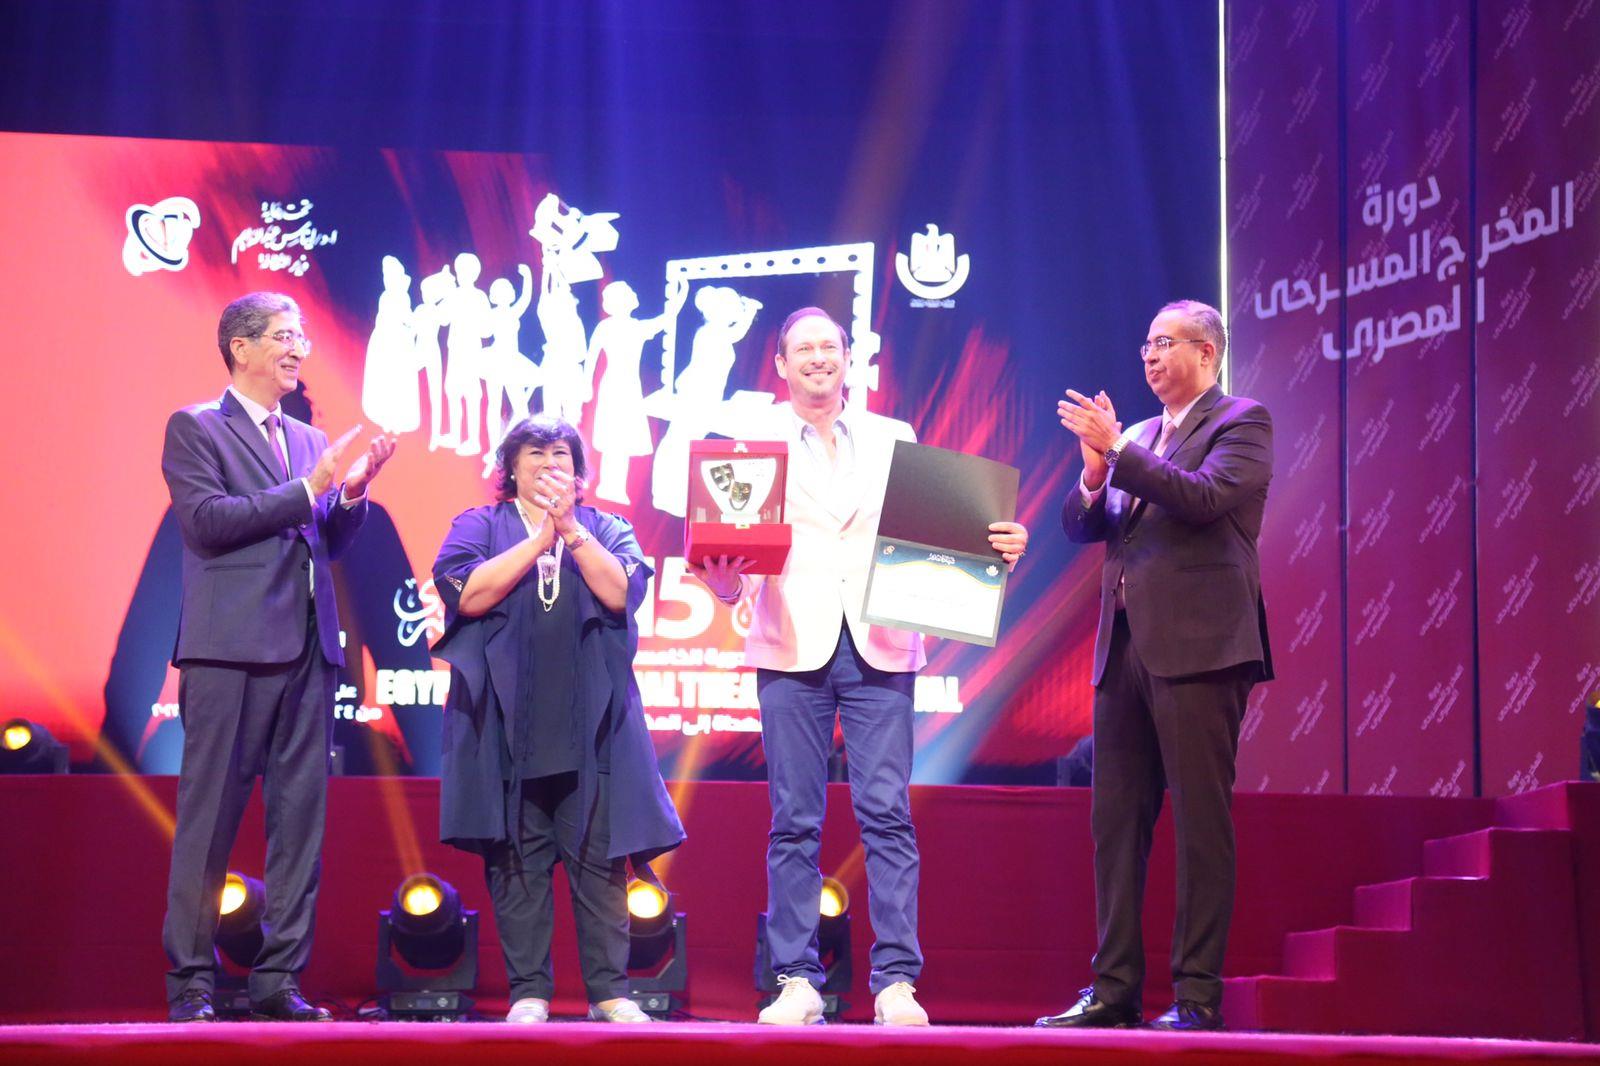 حفل ختام المهرجان القومي للمسرح المصري 